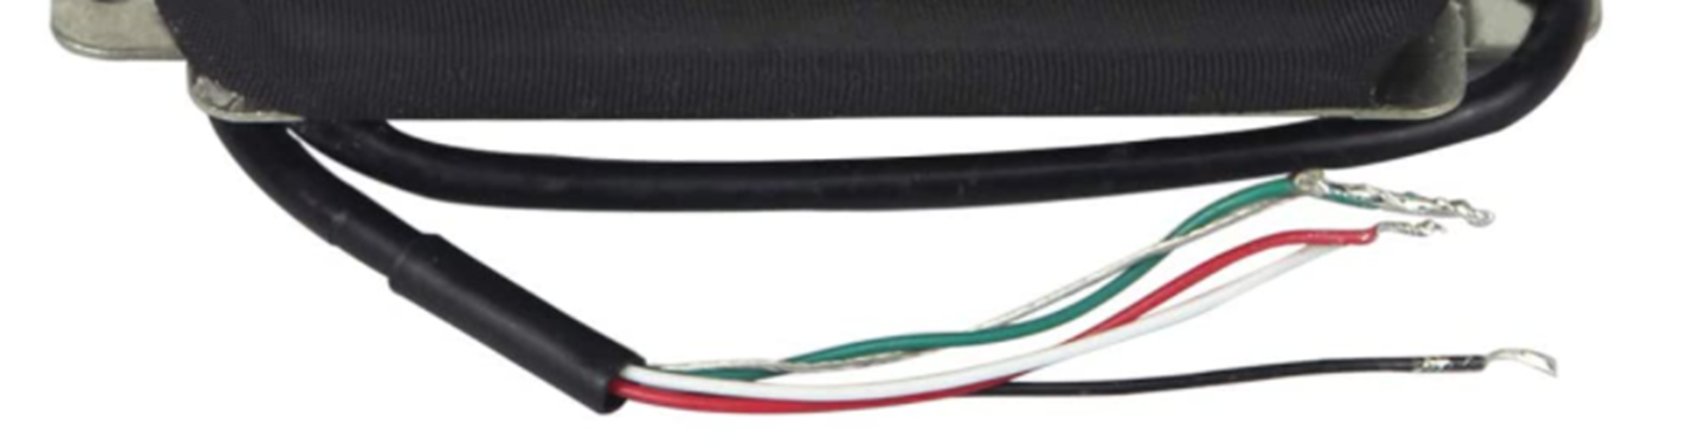 Pastilla Humbucker con cinco cables de conexión.